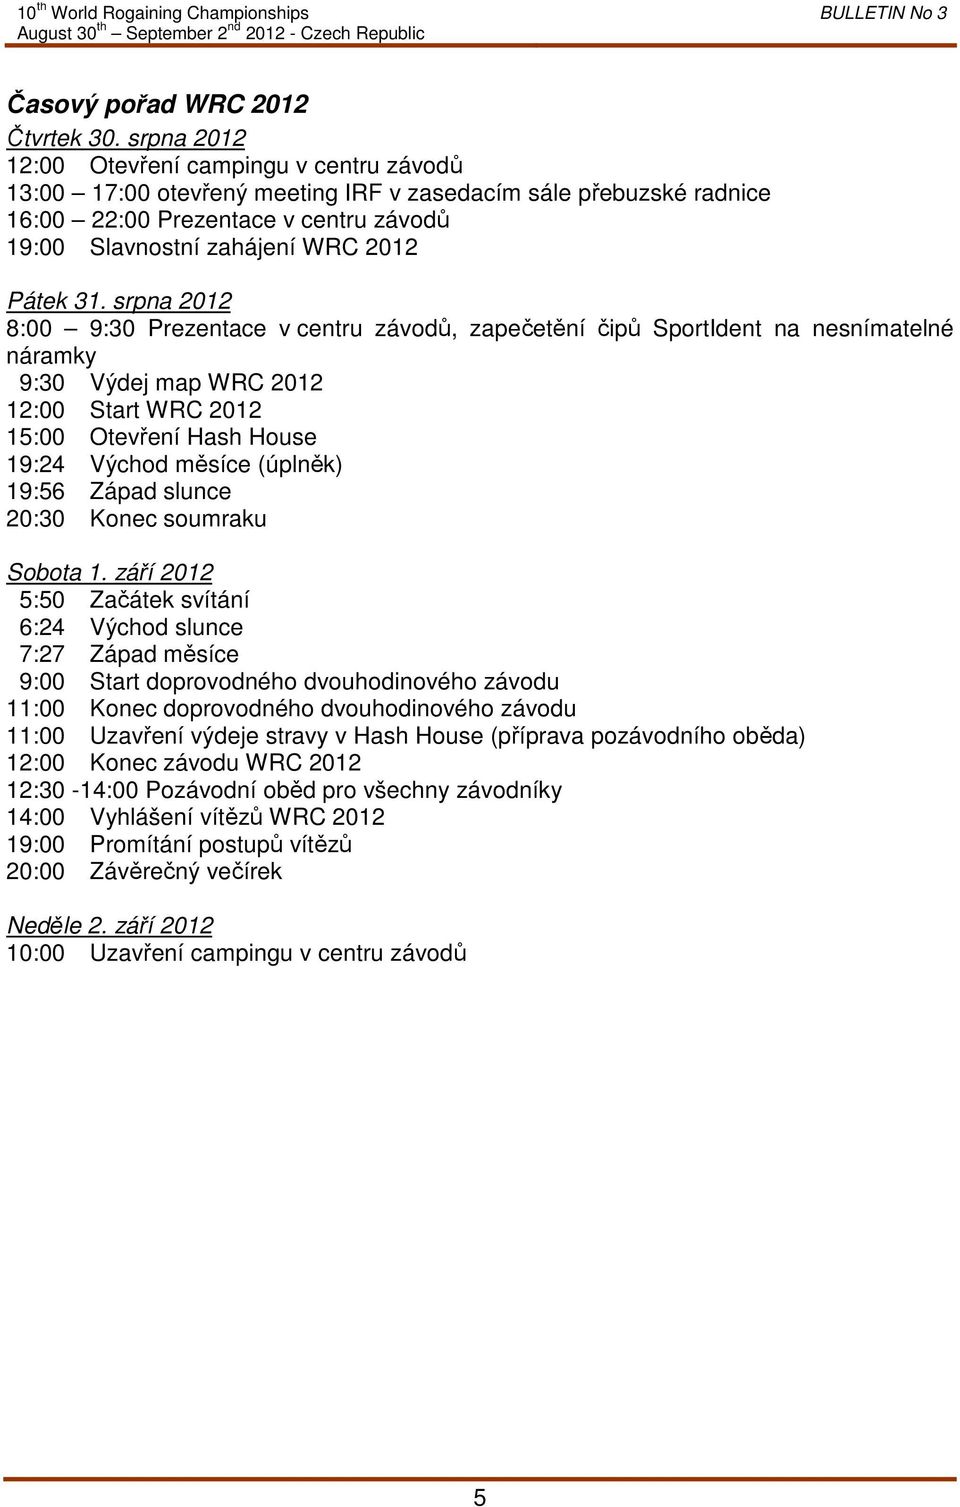 31. srpna 2012 8:00 9:30 Prezentace v centru závodů, zapečetění čipů SportIdent na nesnímatelné náramky 9:30 Výdej map WRC 2012 12:00 Start WRC 2012 15:00 Otevření Hash House 19:24 Východ měsíce